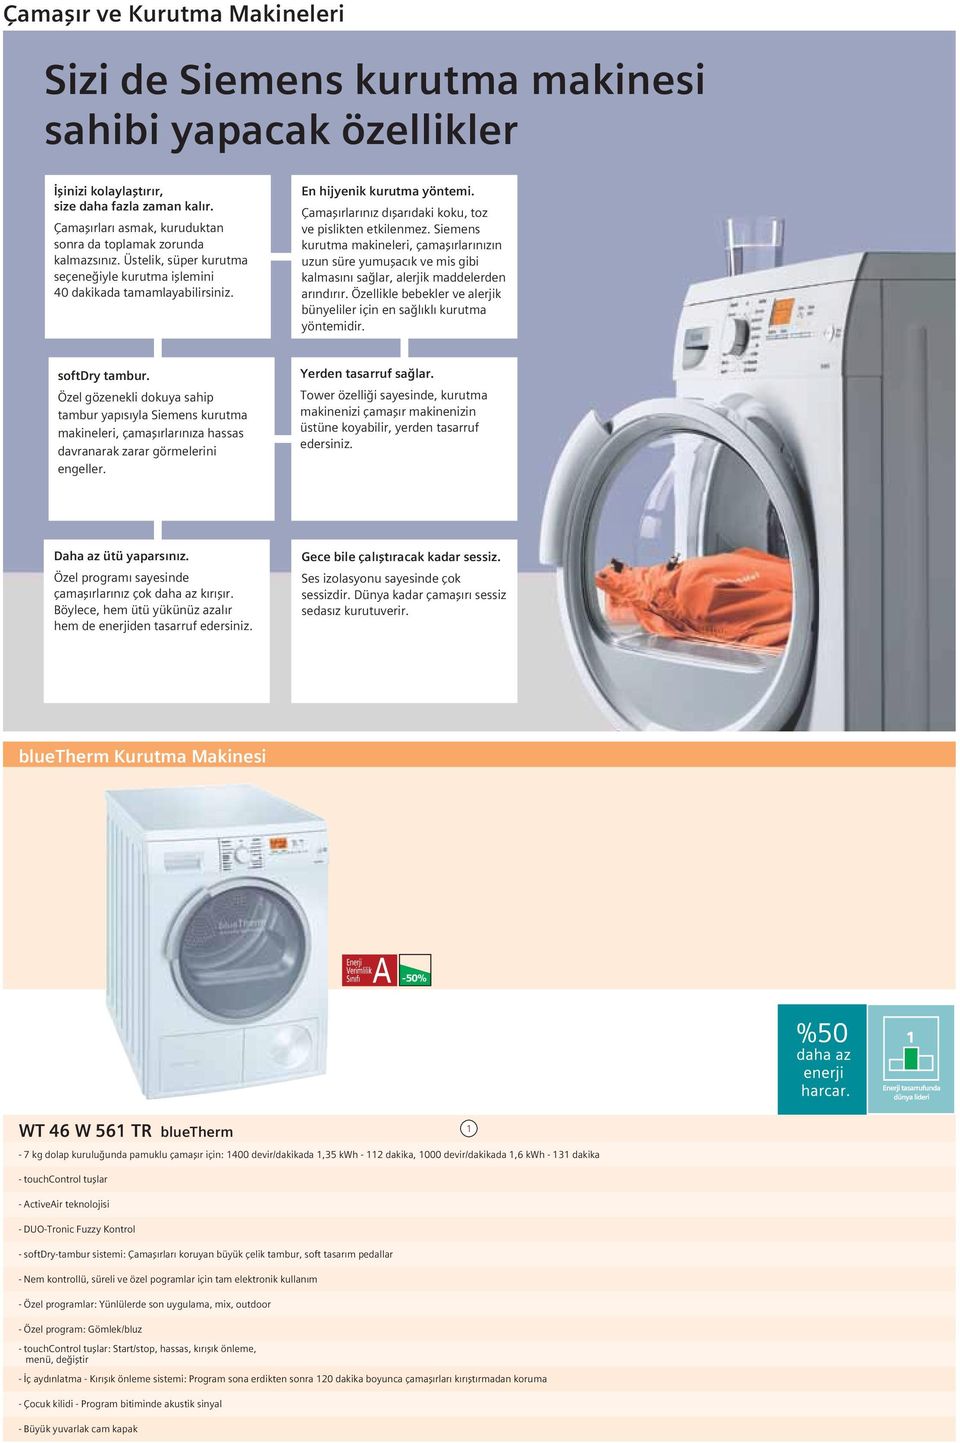 Çamaşırlarınız dışarıdaki koku, toz ve pislikten etkilenmez. Siemens kurutma makineleri, çamaşırlarınızın uzun süre yumuşacık ve mis gibi kalmasını sağlar, alerjik maddelerden arındırır.